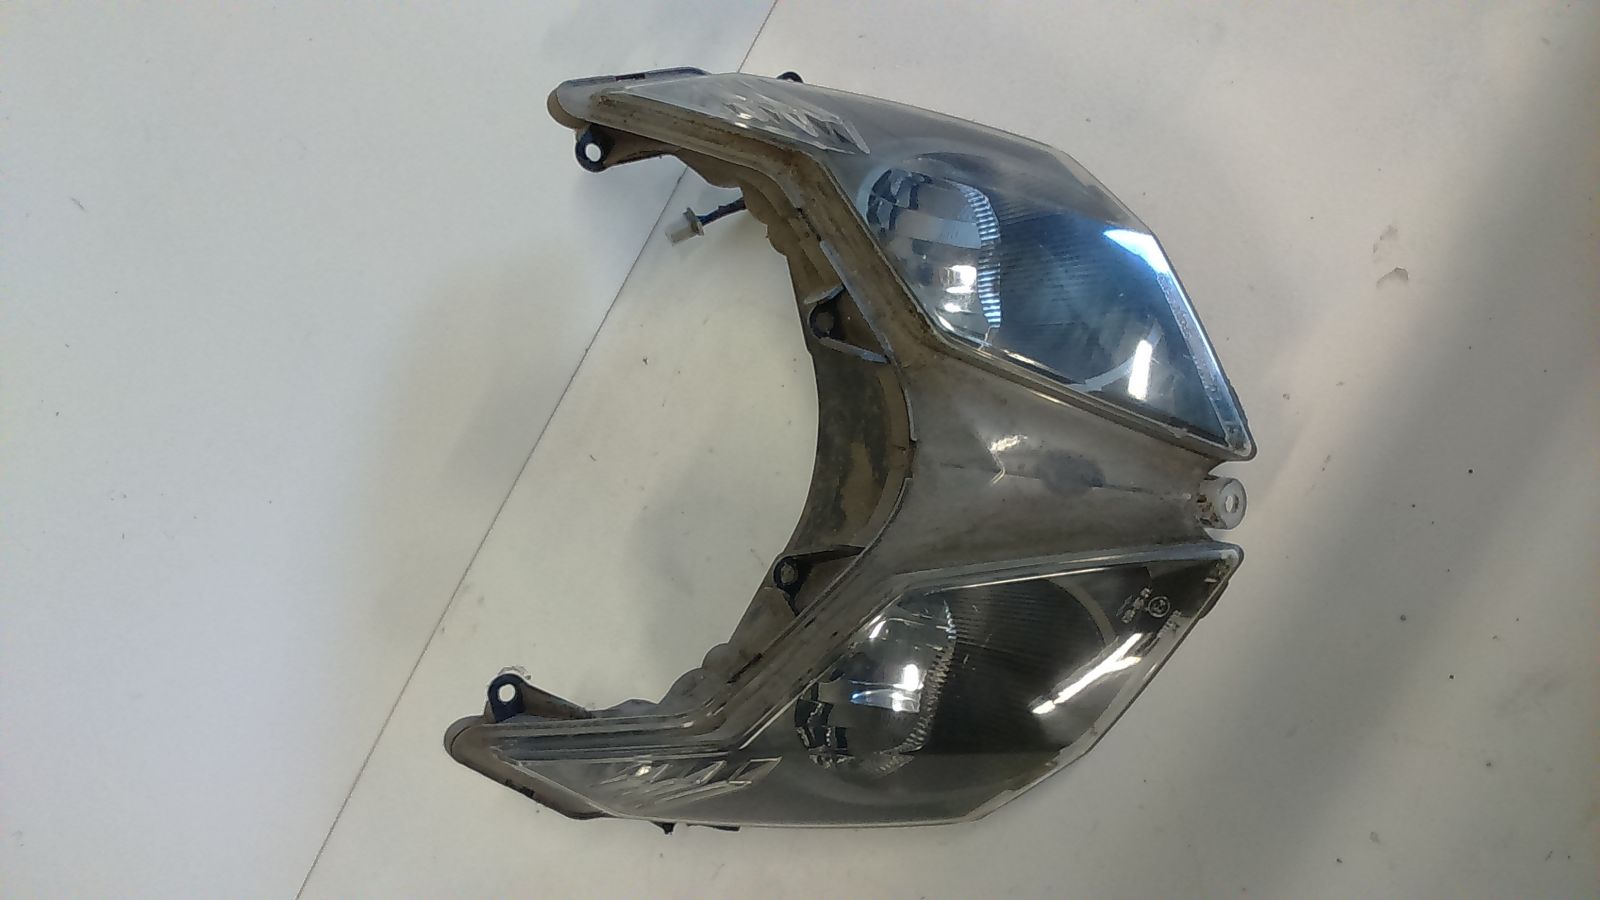 Sym Jet sport x headlamp with 1 broken suspension point